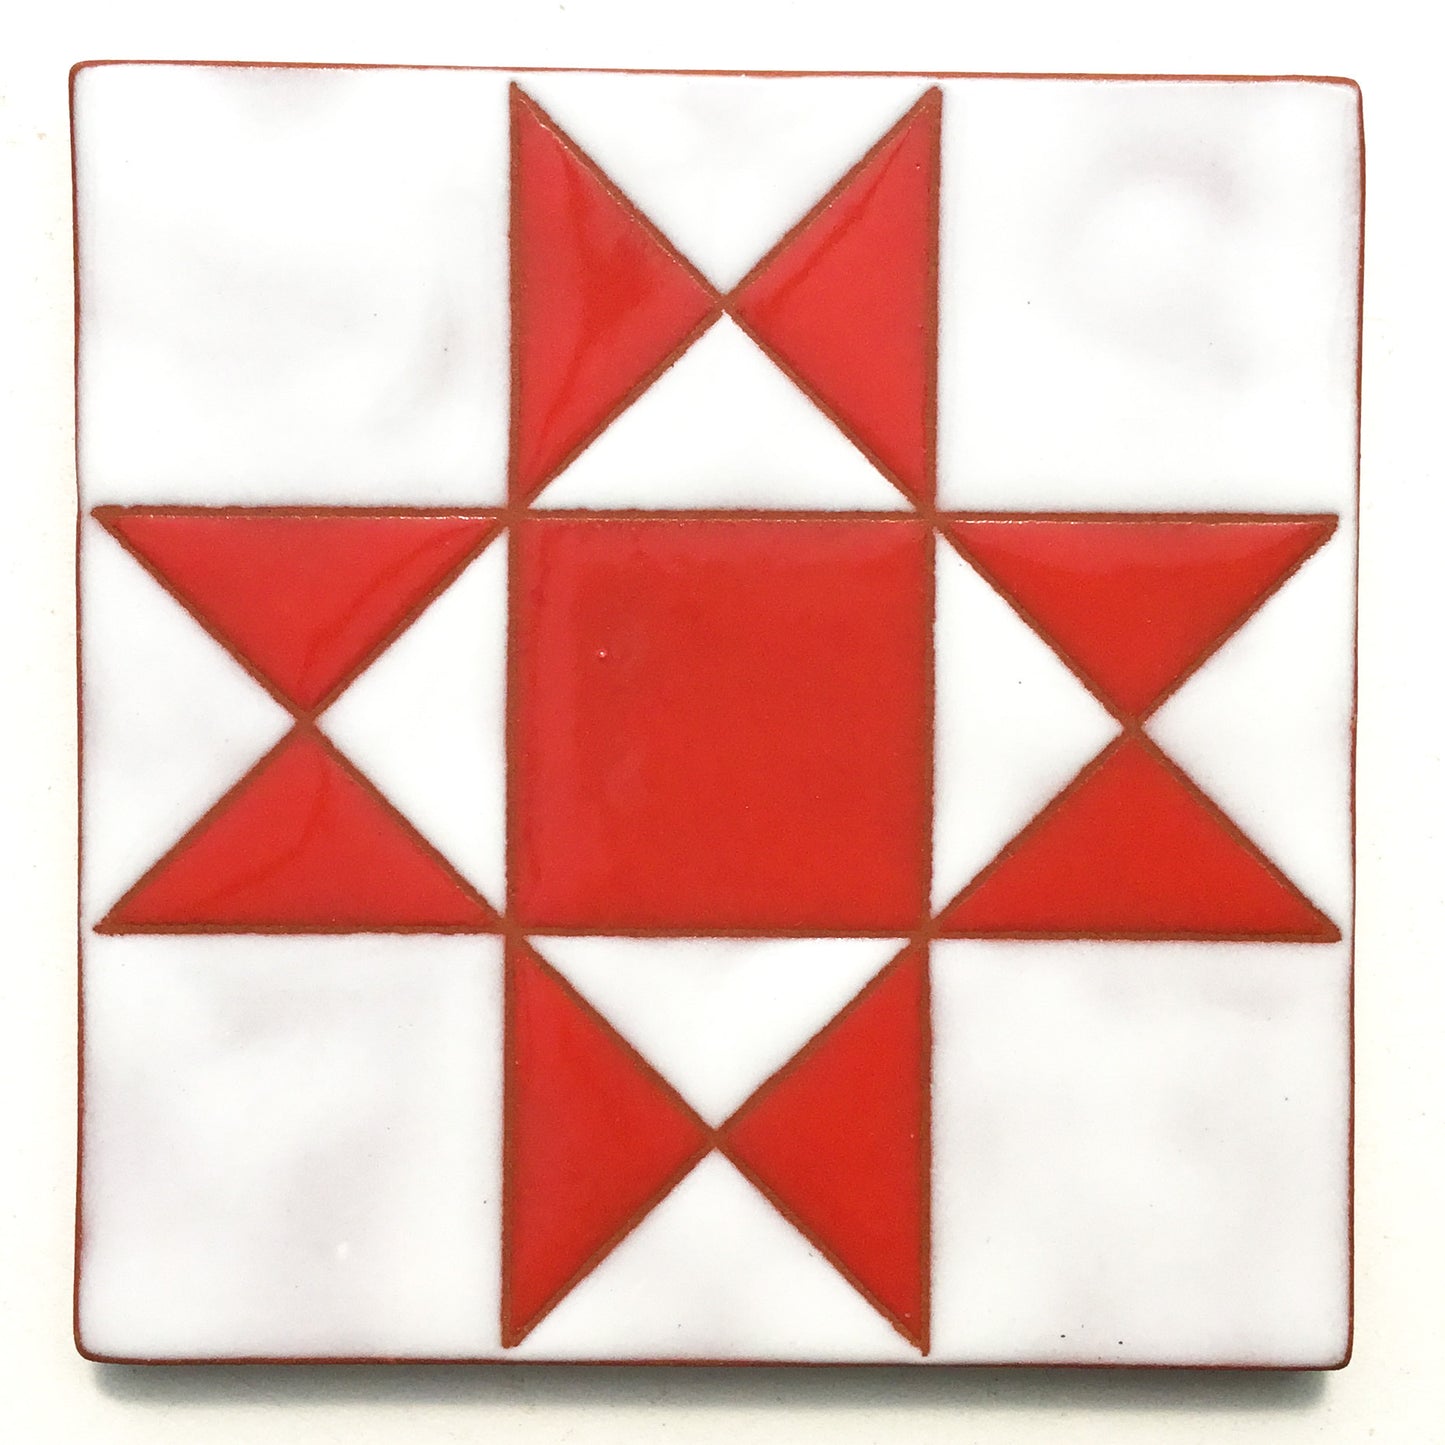 Ohio Star Quilt Block Coaster - Ceramic Art Tile #8